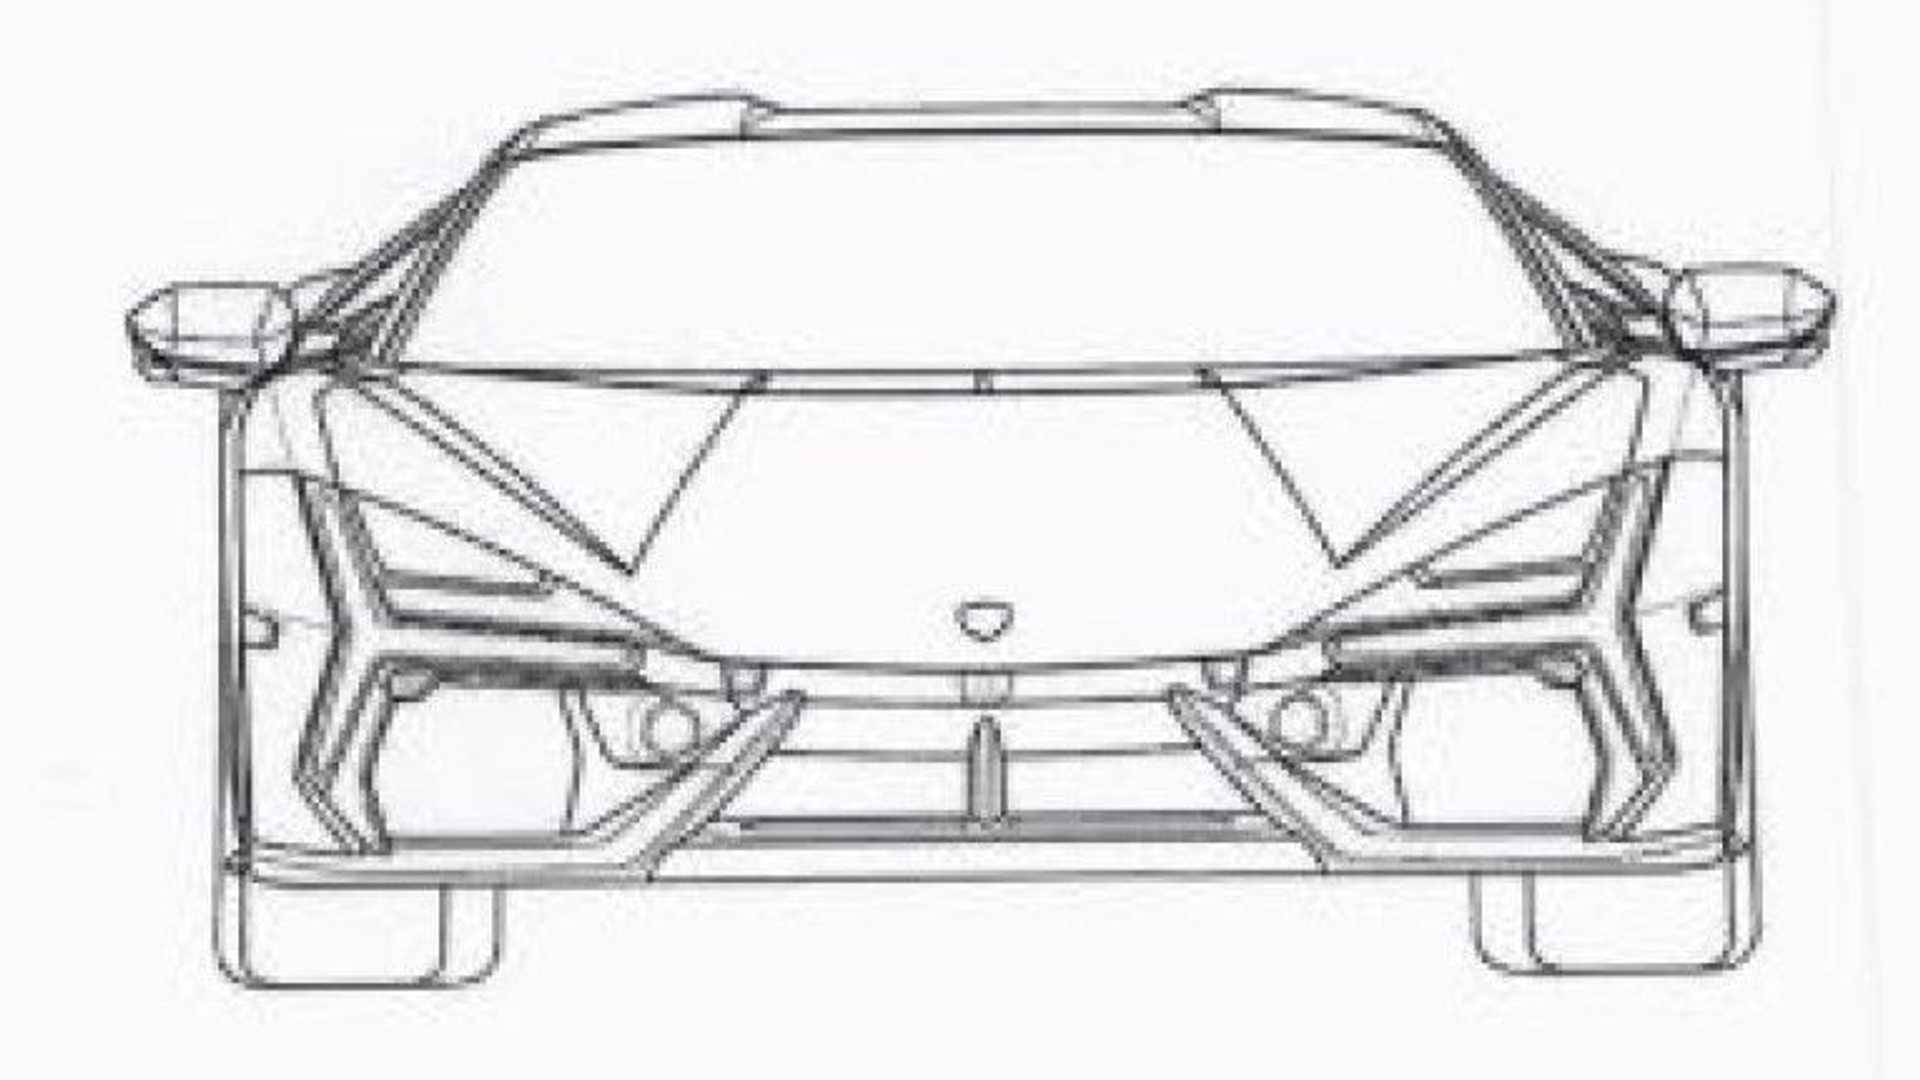 Lamborghini-Aventador-Replacement-Patent-Images-1